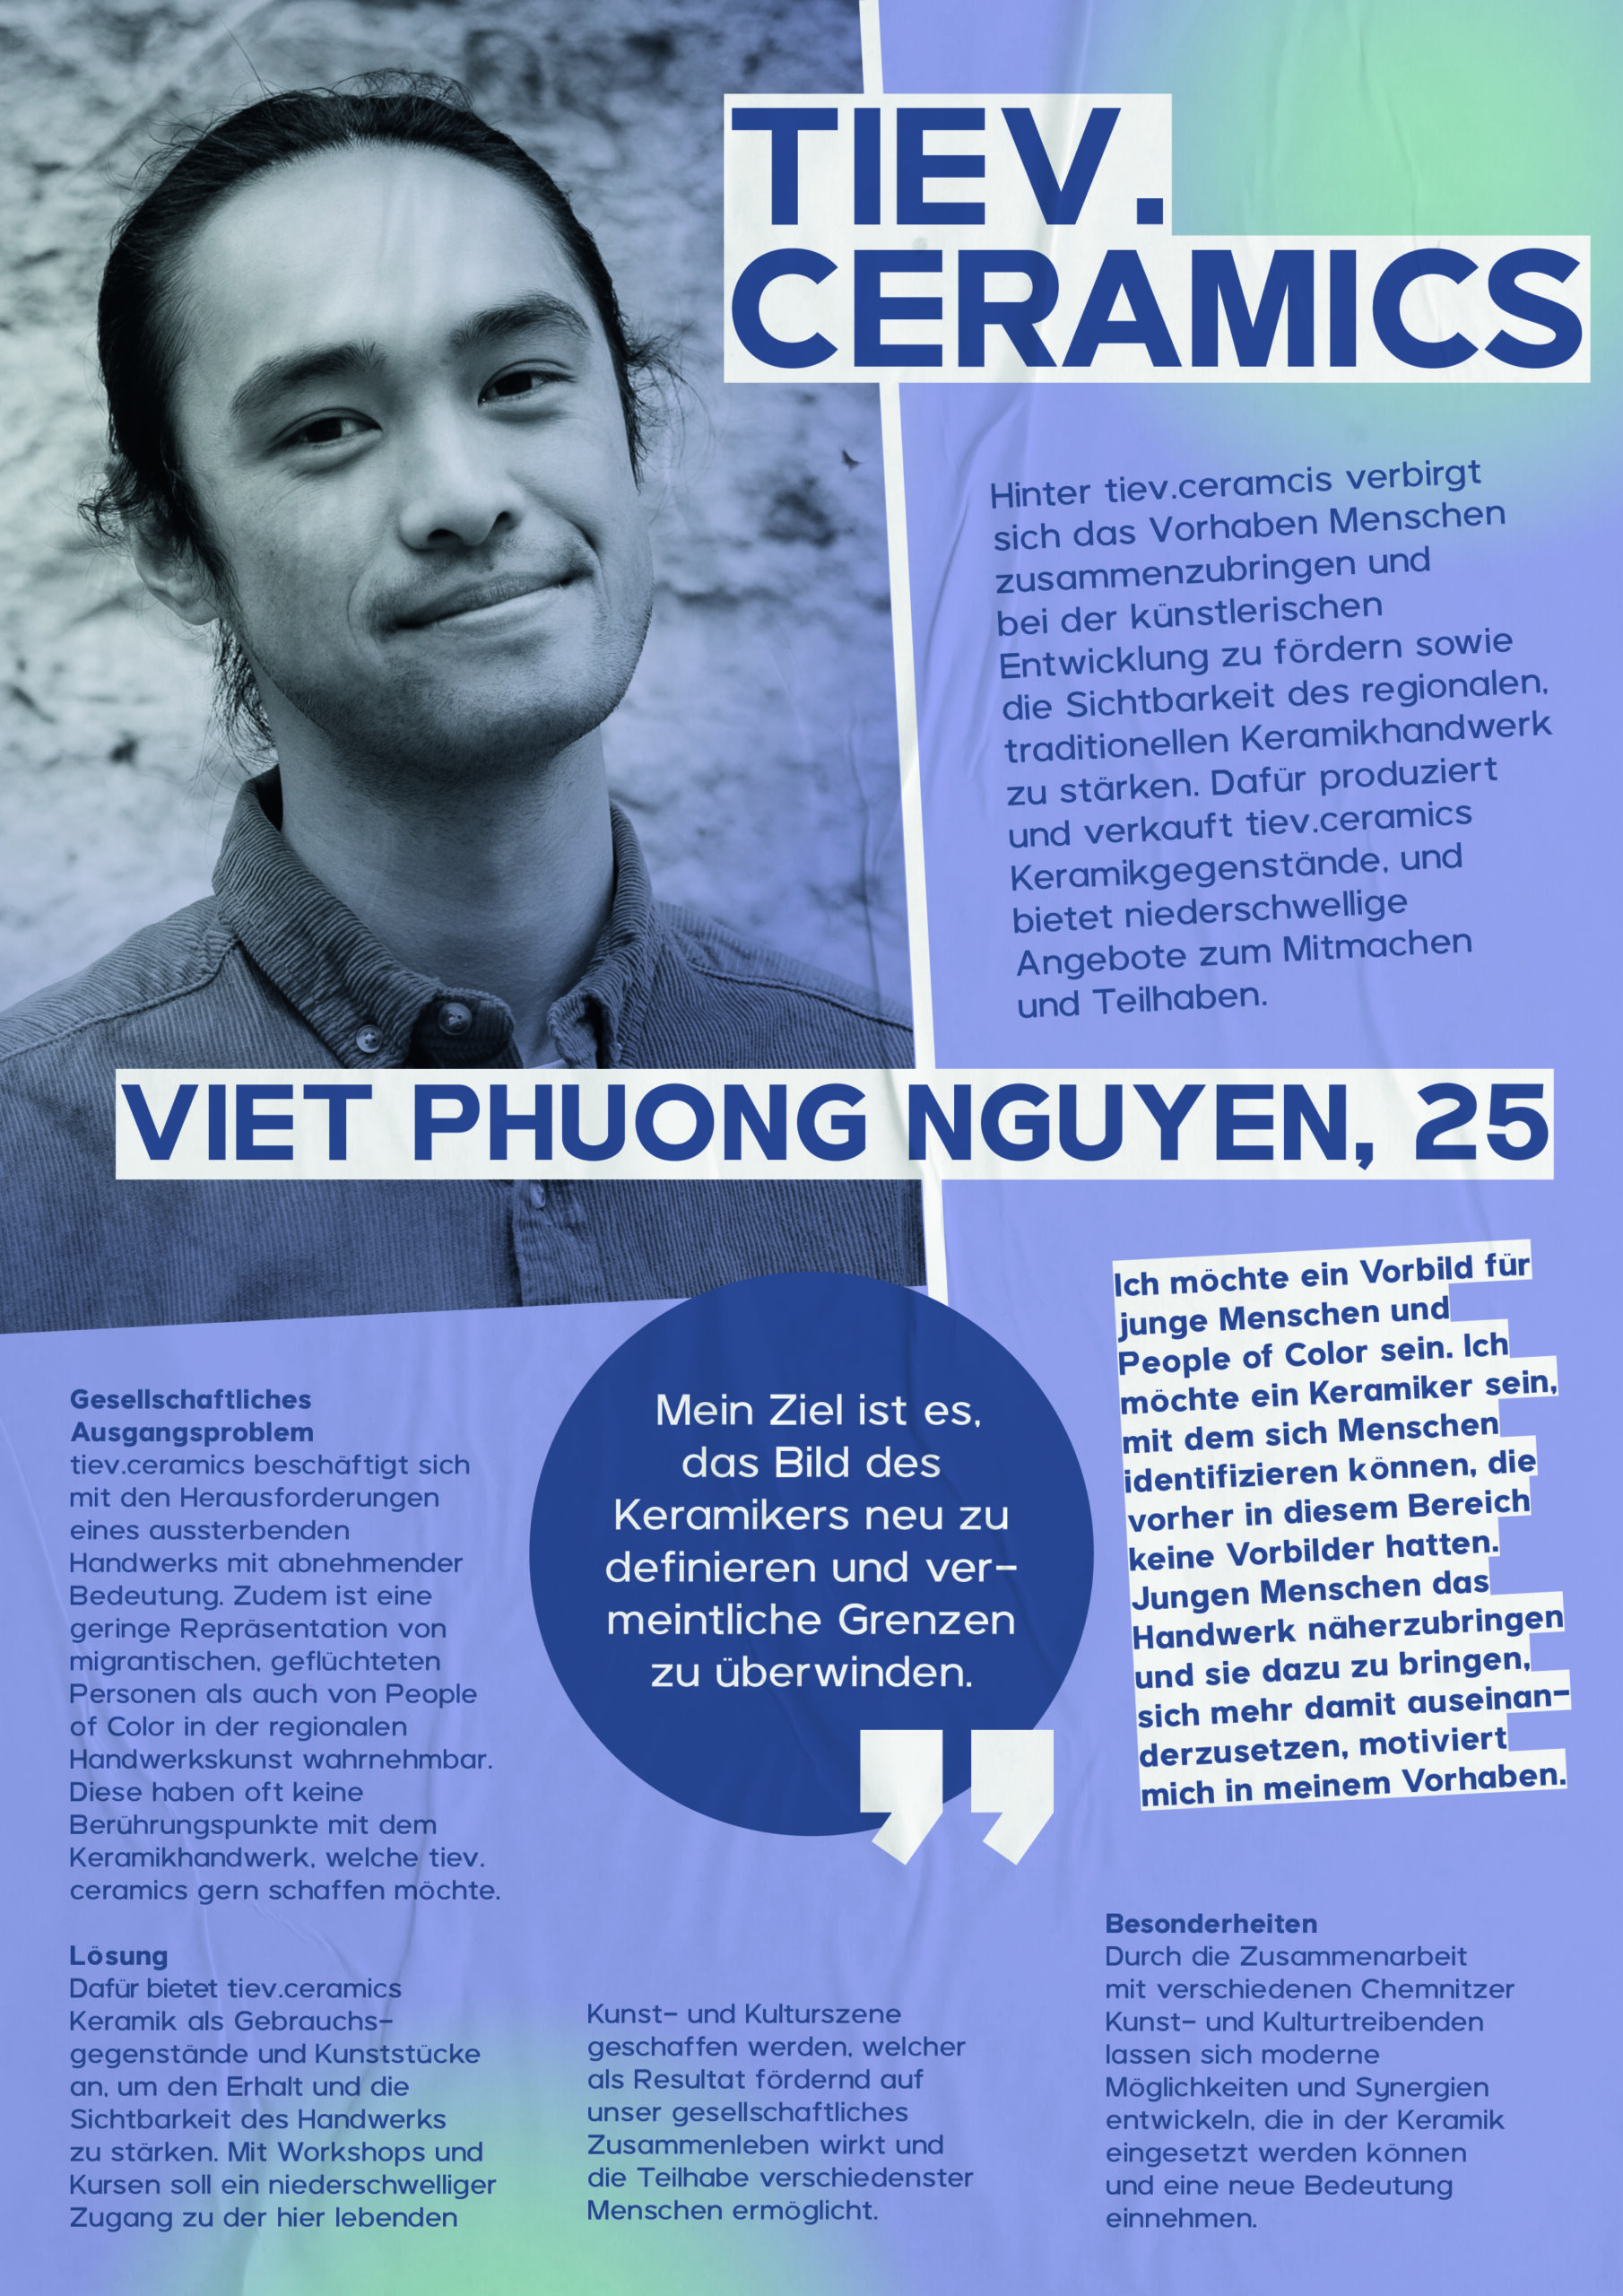 Viet Phuong Nguyen, 25, will mit seiner Idee tiev.ceramics Menschen zusammenzubringen und bei der künstlerischen Entwicklung fördern. Außerdem will er die Sichtbarkeit des regionalen, traditionellen Keramikhandwerk stärken.